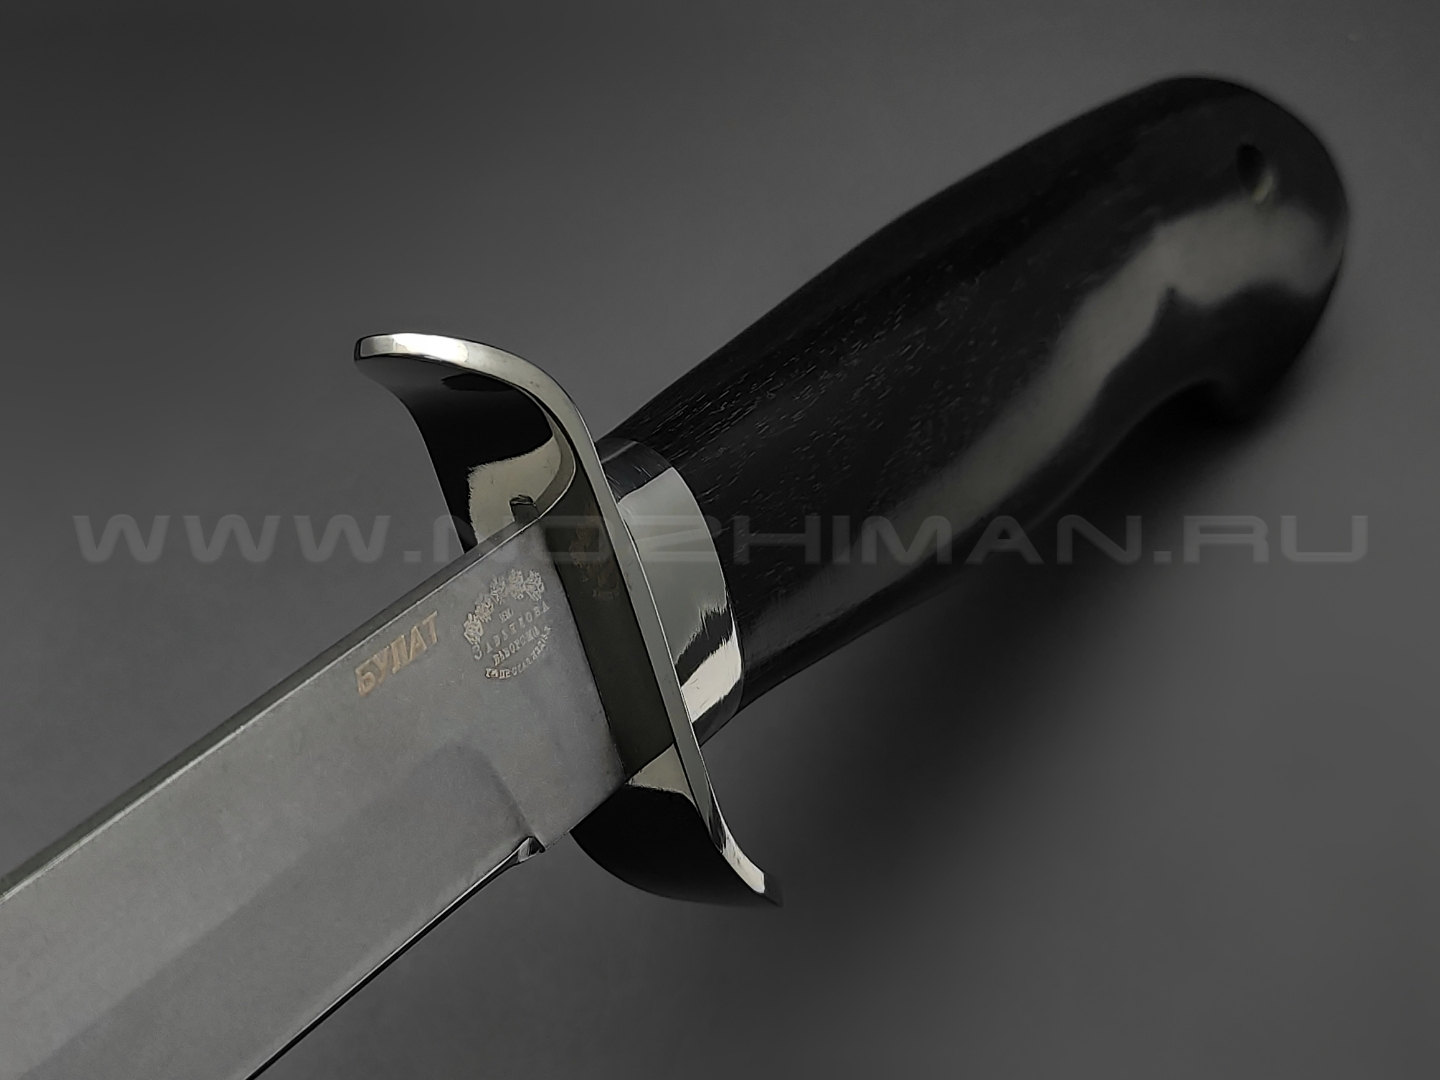 Нож разведчика "НР-40" булатная сталь, рукоять дерево граб, мельхиор (Товарищество Завьялова)